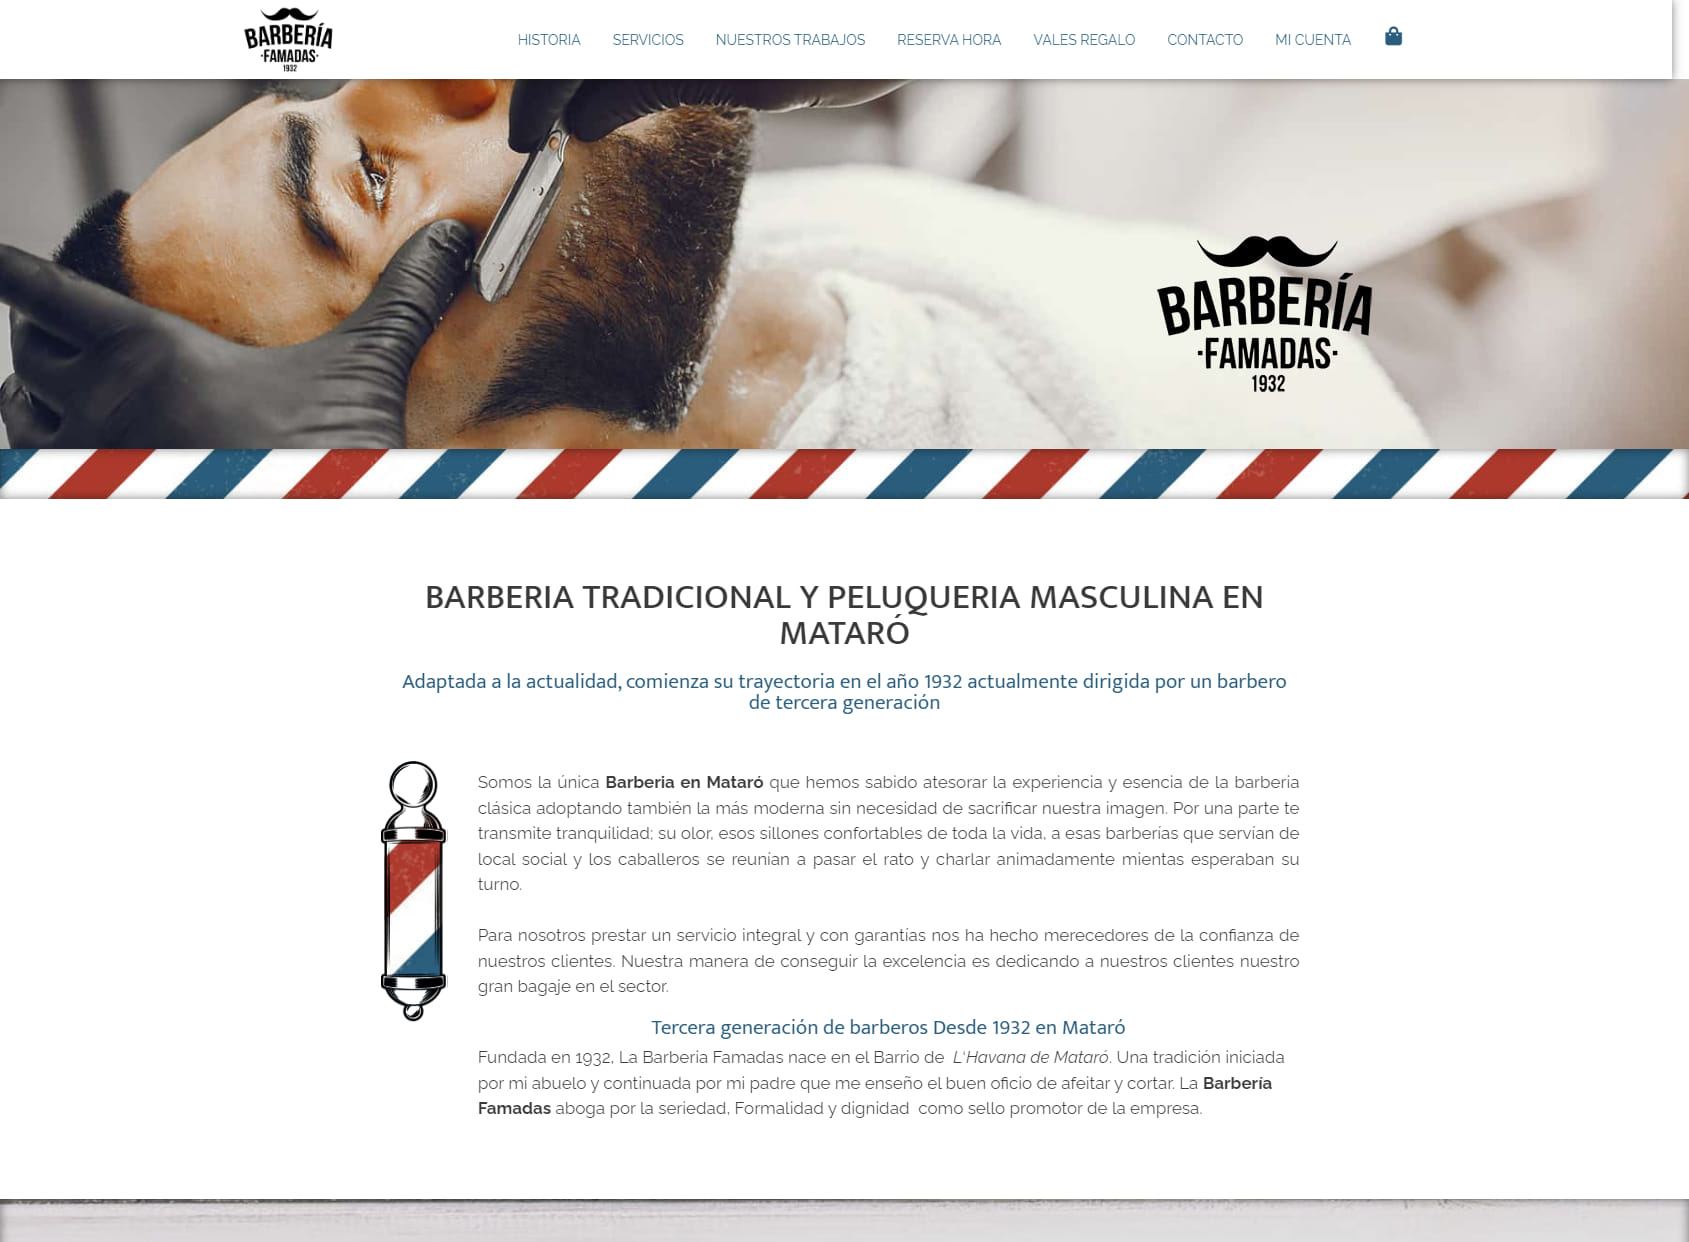 Barberia Famadas (1932)